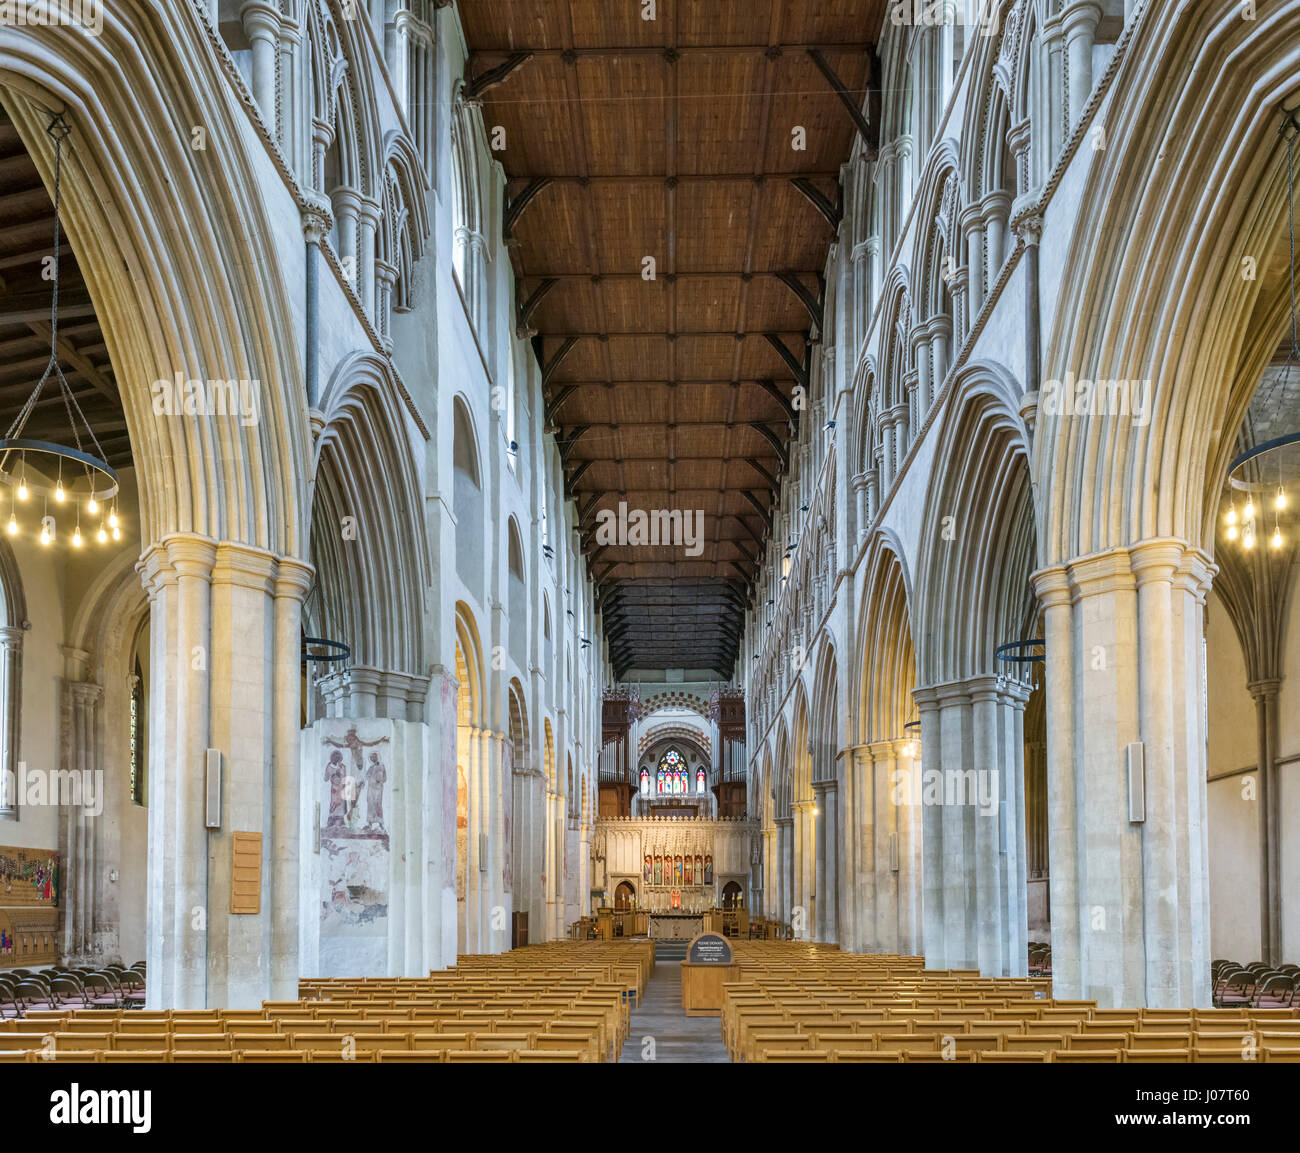 St Albans Cathedral. Navata centrale del Duomo e Chiesa Abbaziale di St Alban, St Albans, Hertfordshire, Inghilterra, Regno Unito Foto Stock